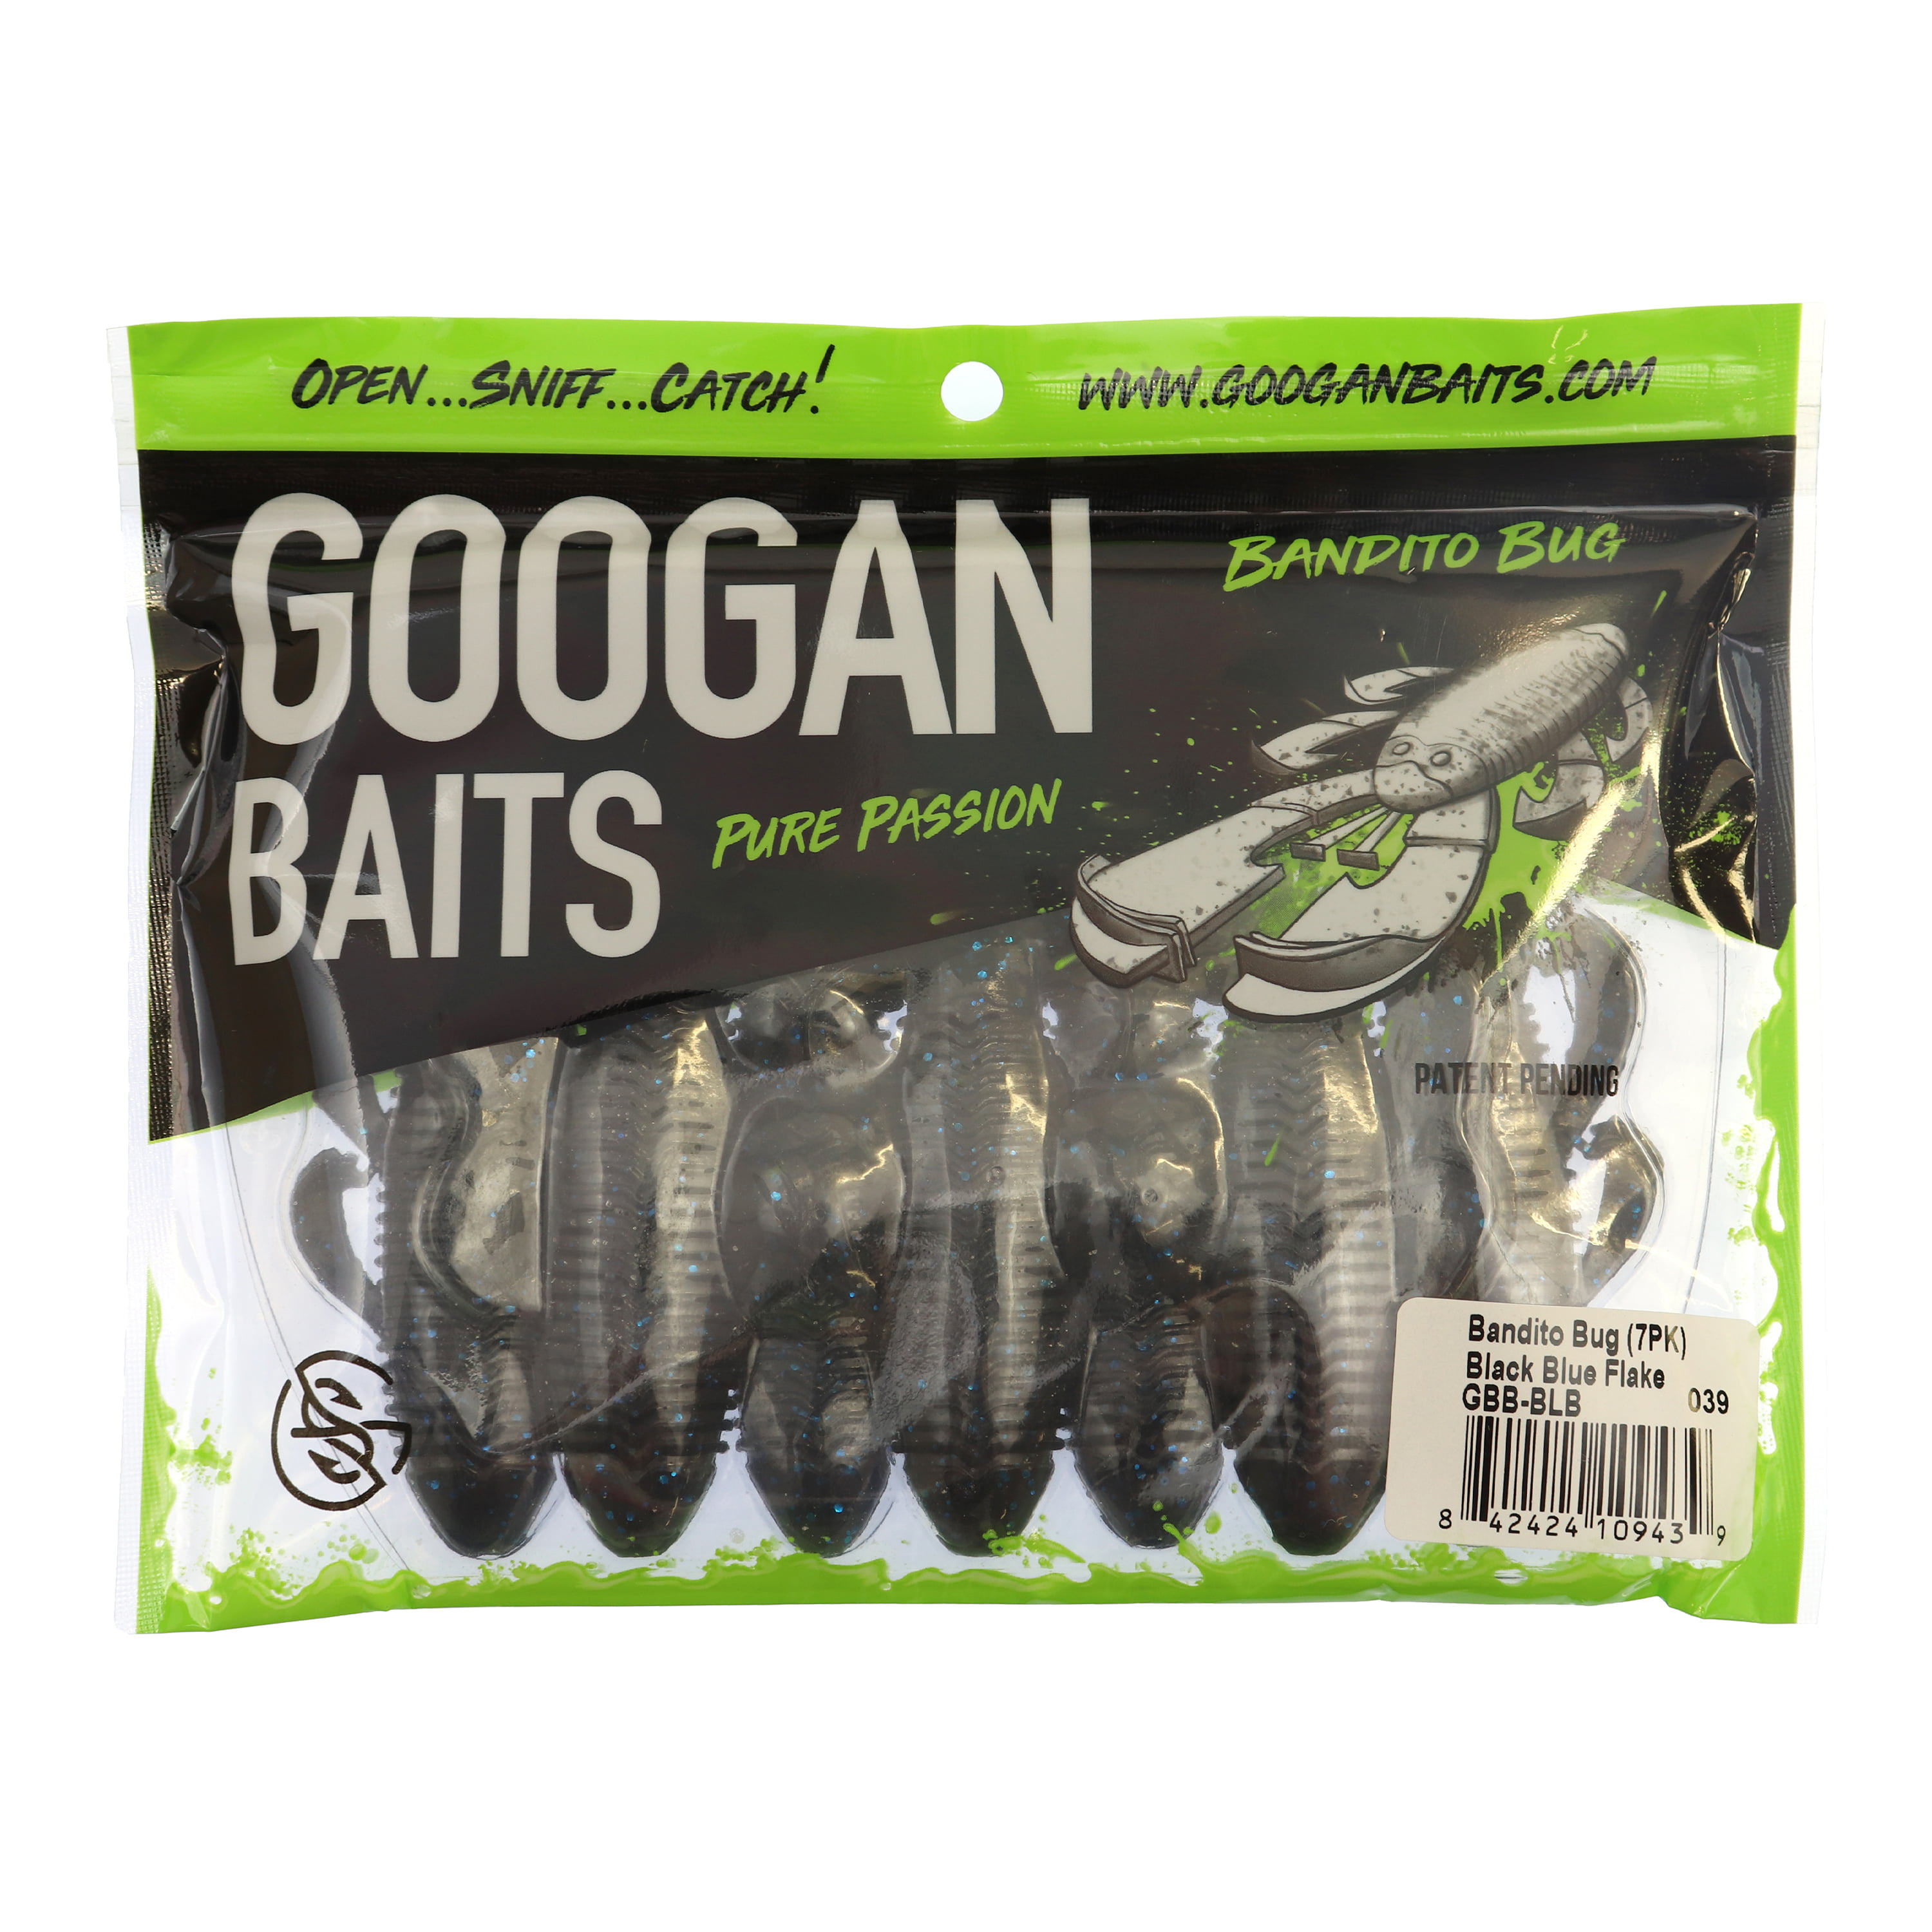 Googan Baits 4 Bandito Bug, 7 Pack - 722614, Soft Baits at